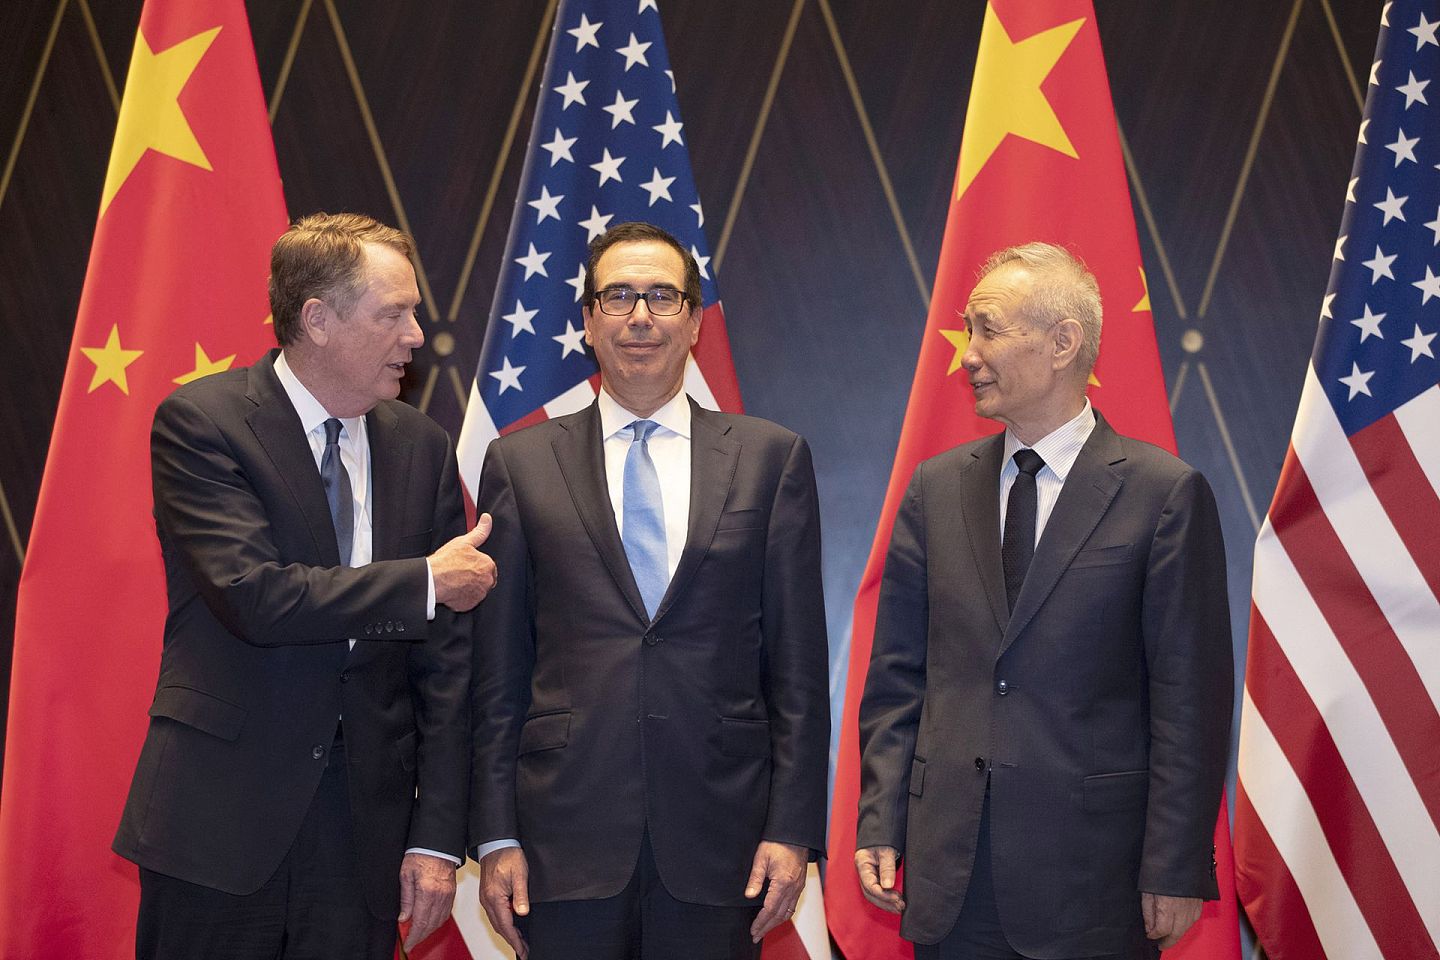 美国目前的贸易代表是莱特希泽（Robert Lighthizer）。图为2019年7月31日，中美贸易谈判在上海西郊会议中心举行，美国贸易代表莱特希泽（左）与美国财政部长努钦（中，Steven Mnuchin）和中国副总理刘鹤合影。（AFP）